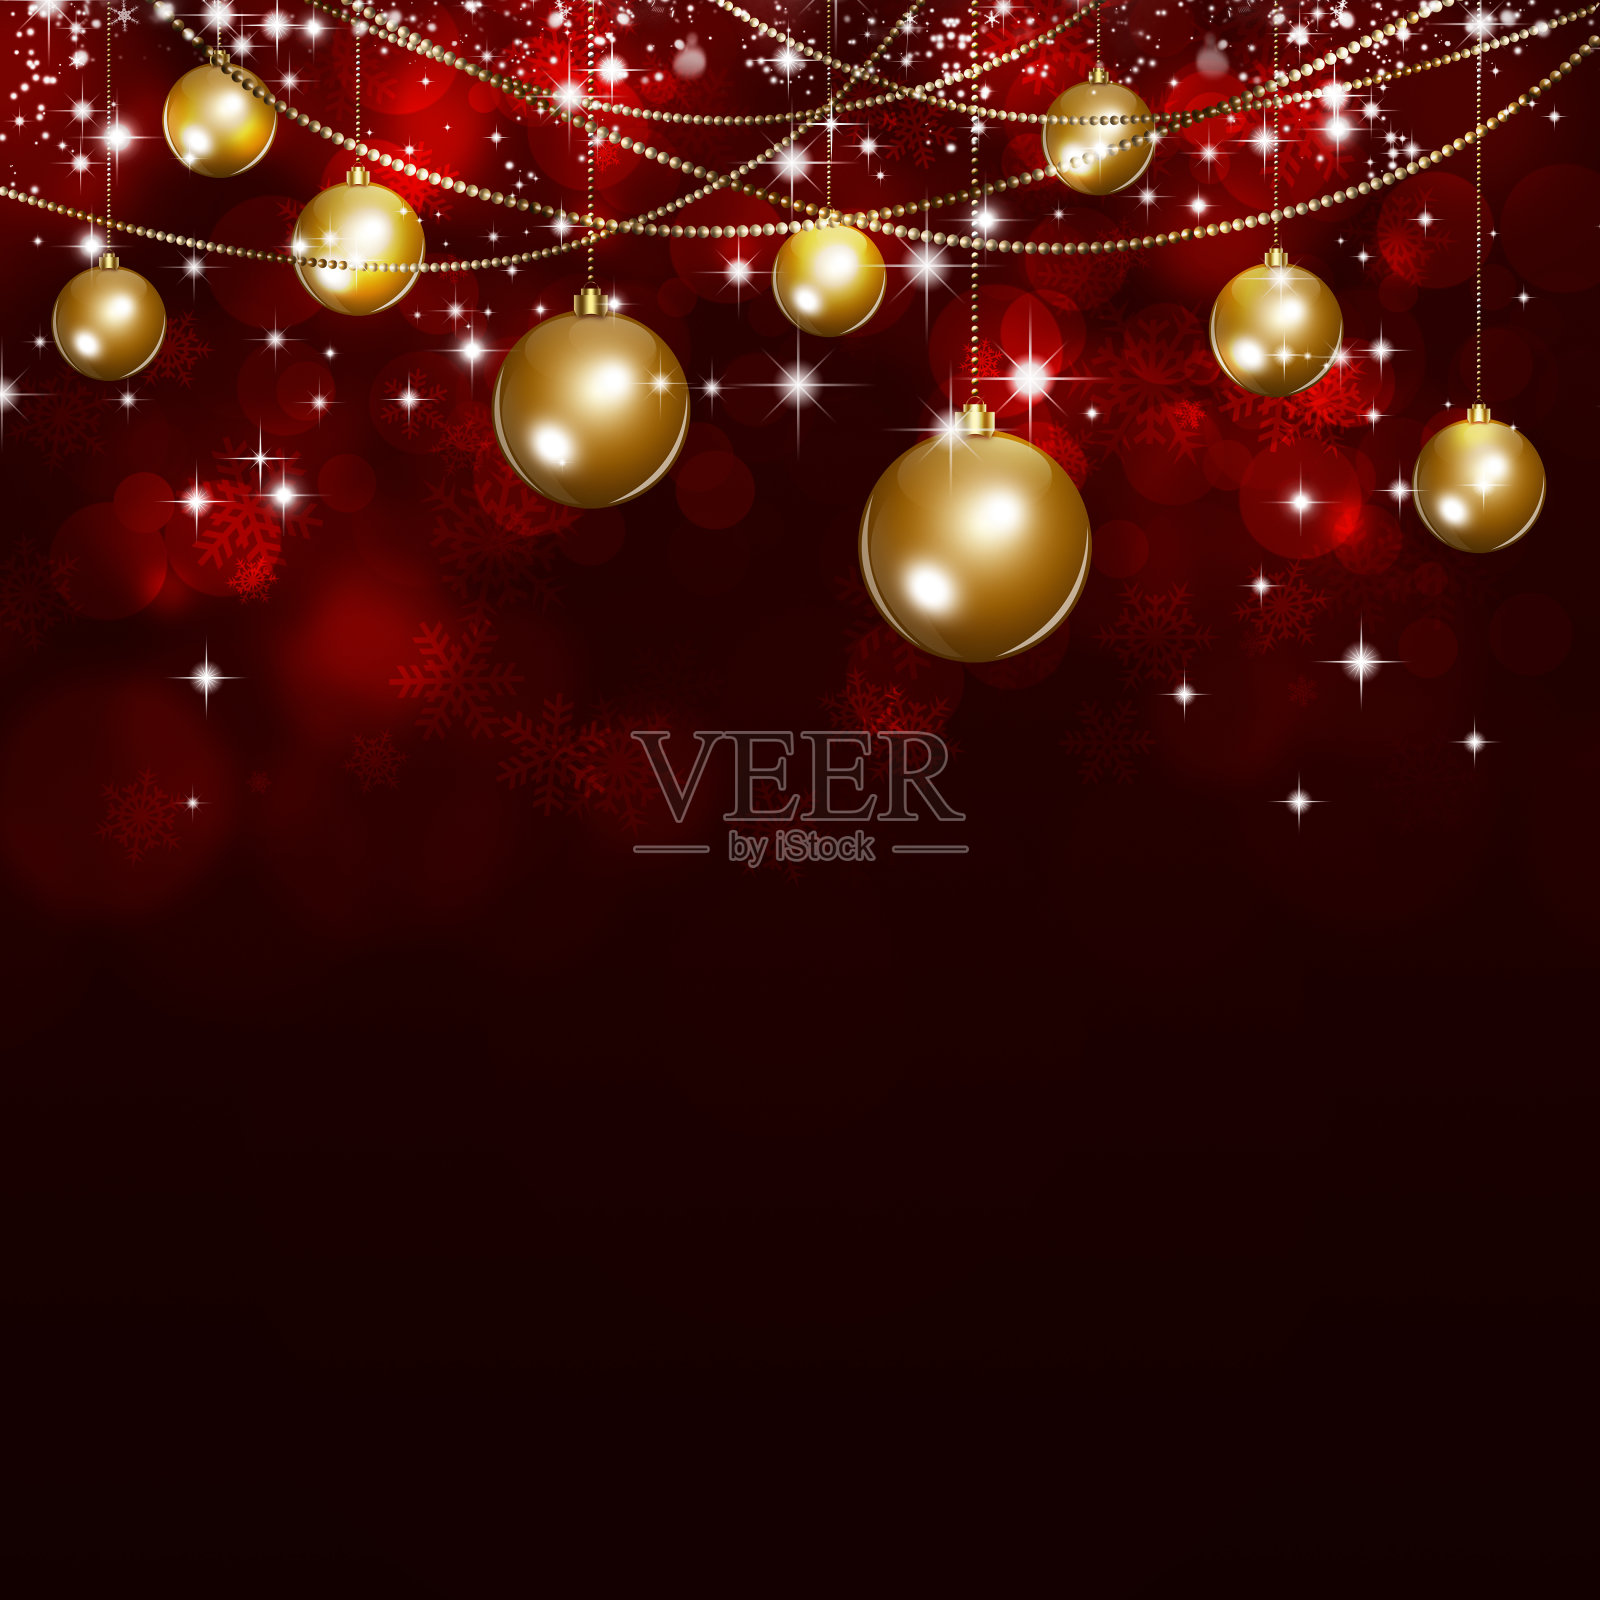 节日暗红色圣诞背景插画图片素材